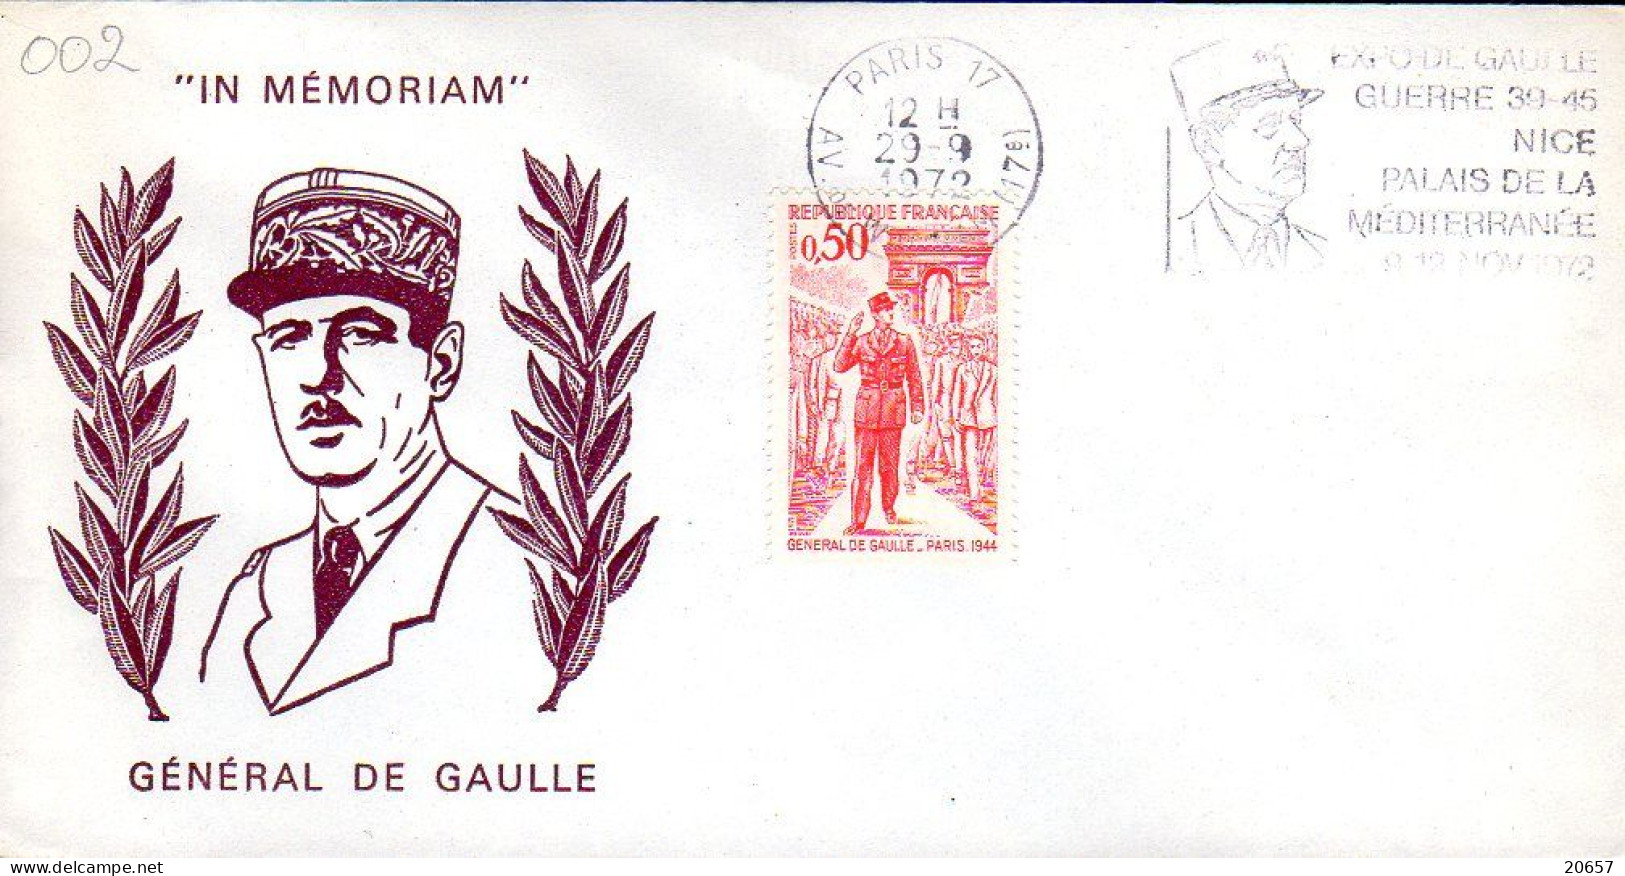 France Enveloppe Commémorative Expo Nice Du 09 Au 12 11 1972 Charles De Gaulle, Lot 03 - De Gaulle (Generale)